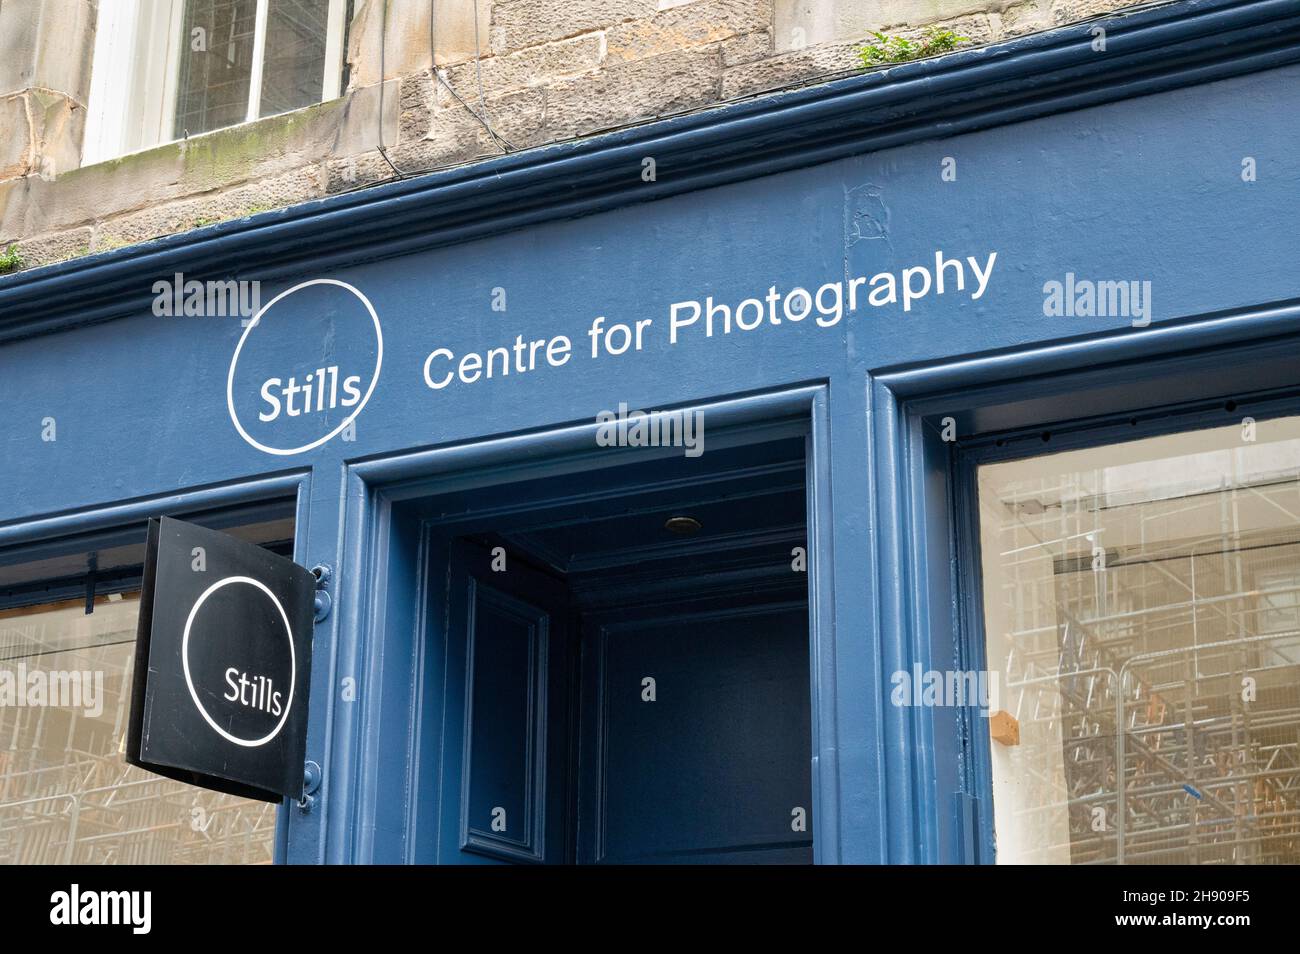 Edimburgo, Scozia - 20 novembre 2021: La parte anteriore del negozio di fotografia Stills a Edimburgo. Foto Stock